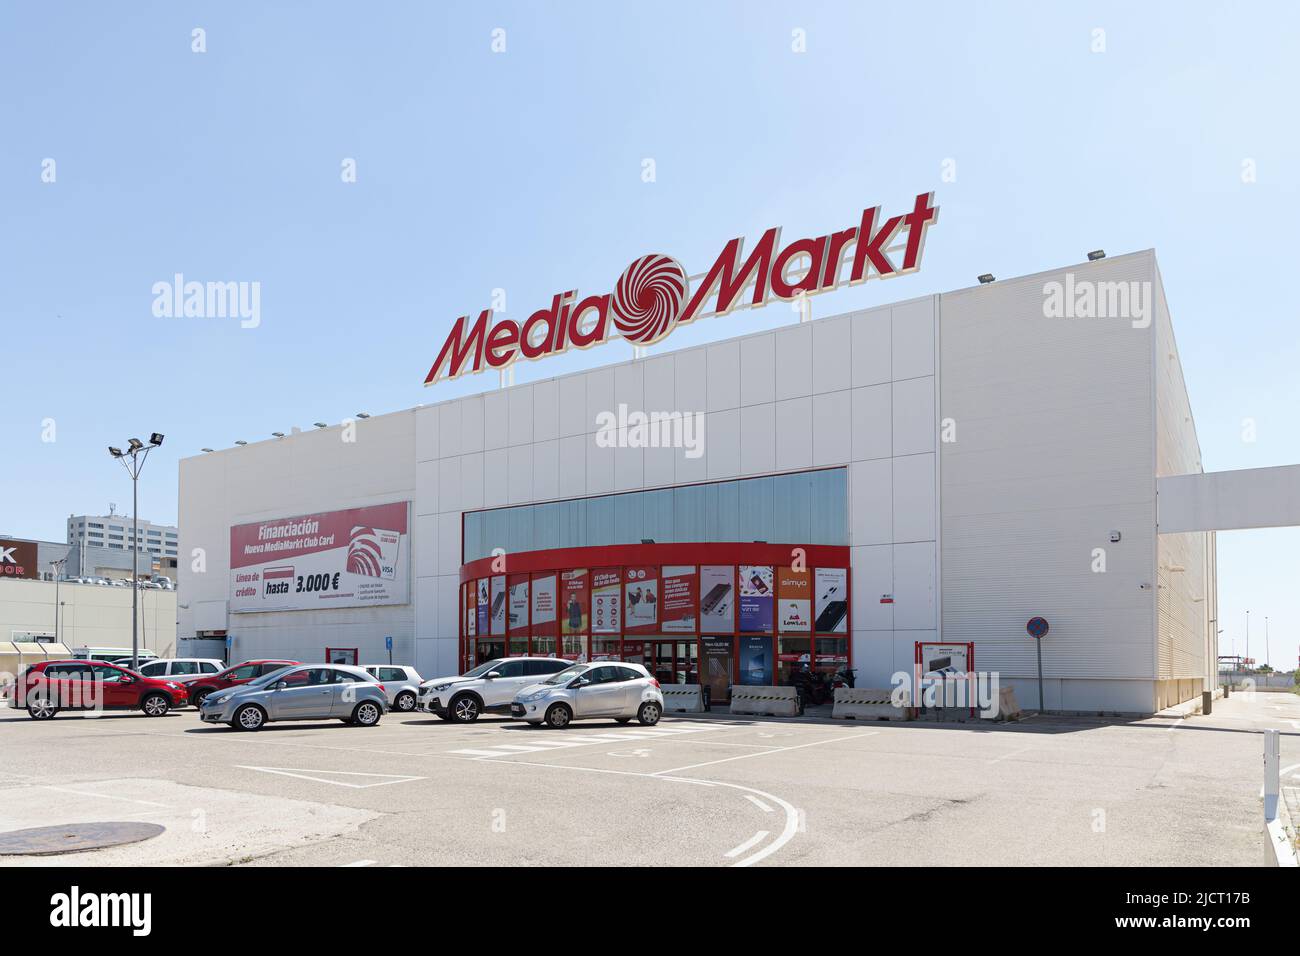 ALFAFAR, ESPAÑA - 06 DE JUNIO de 2022: Media Markt es una cadena multinacional alemana de tiendas que venden electrónica de consumo Foto de stock